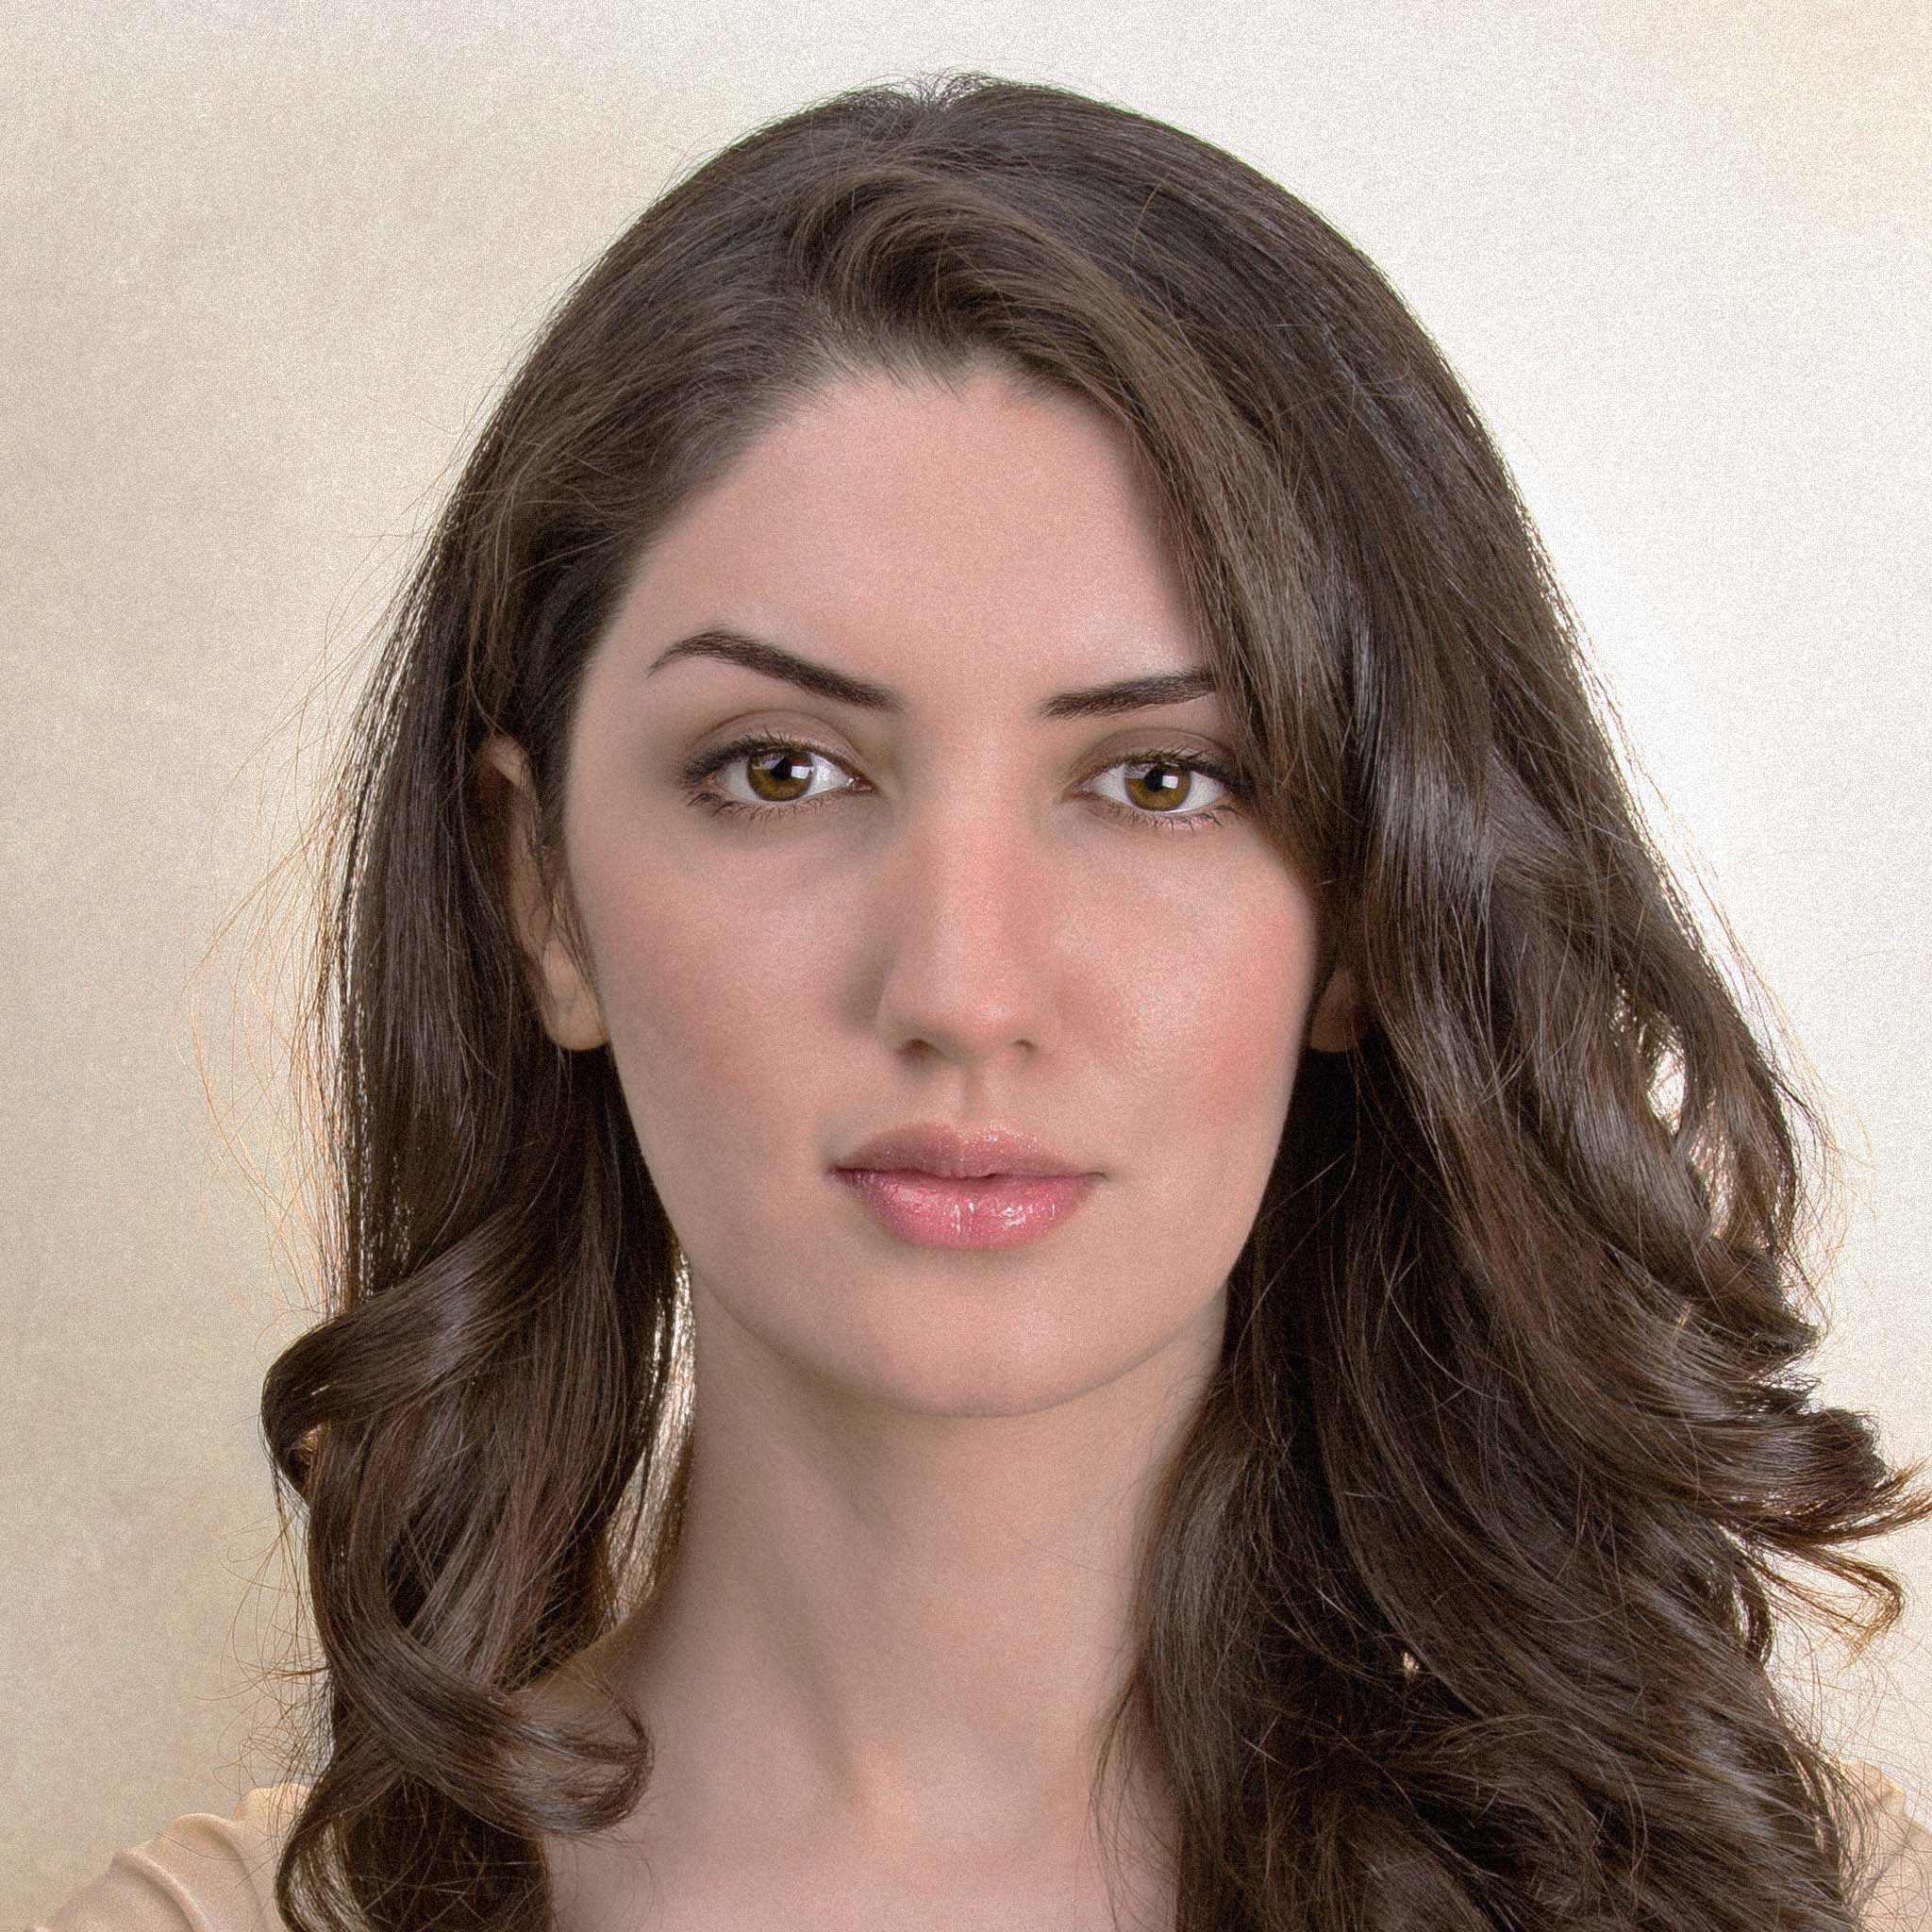 جينار غلغلون - مواطنة في كردستان العراق